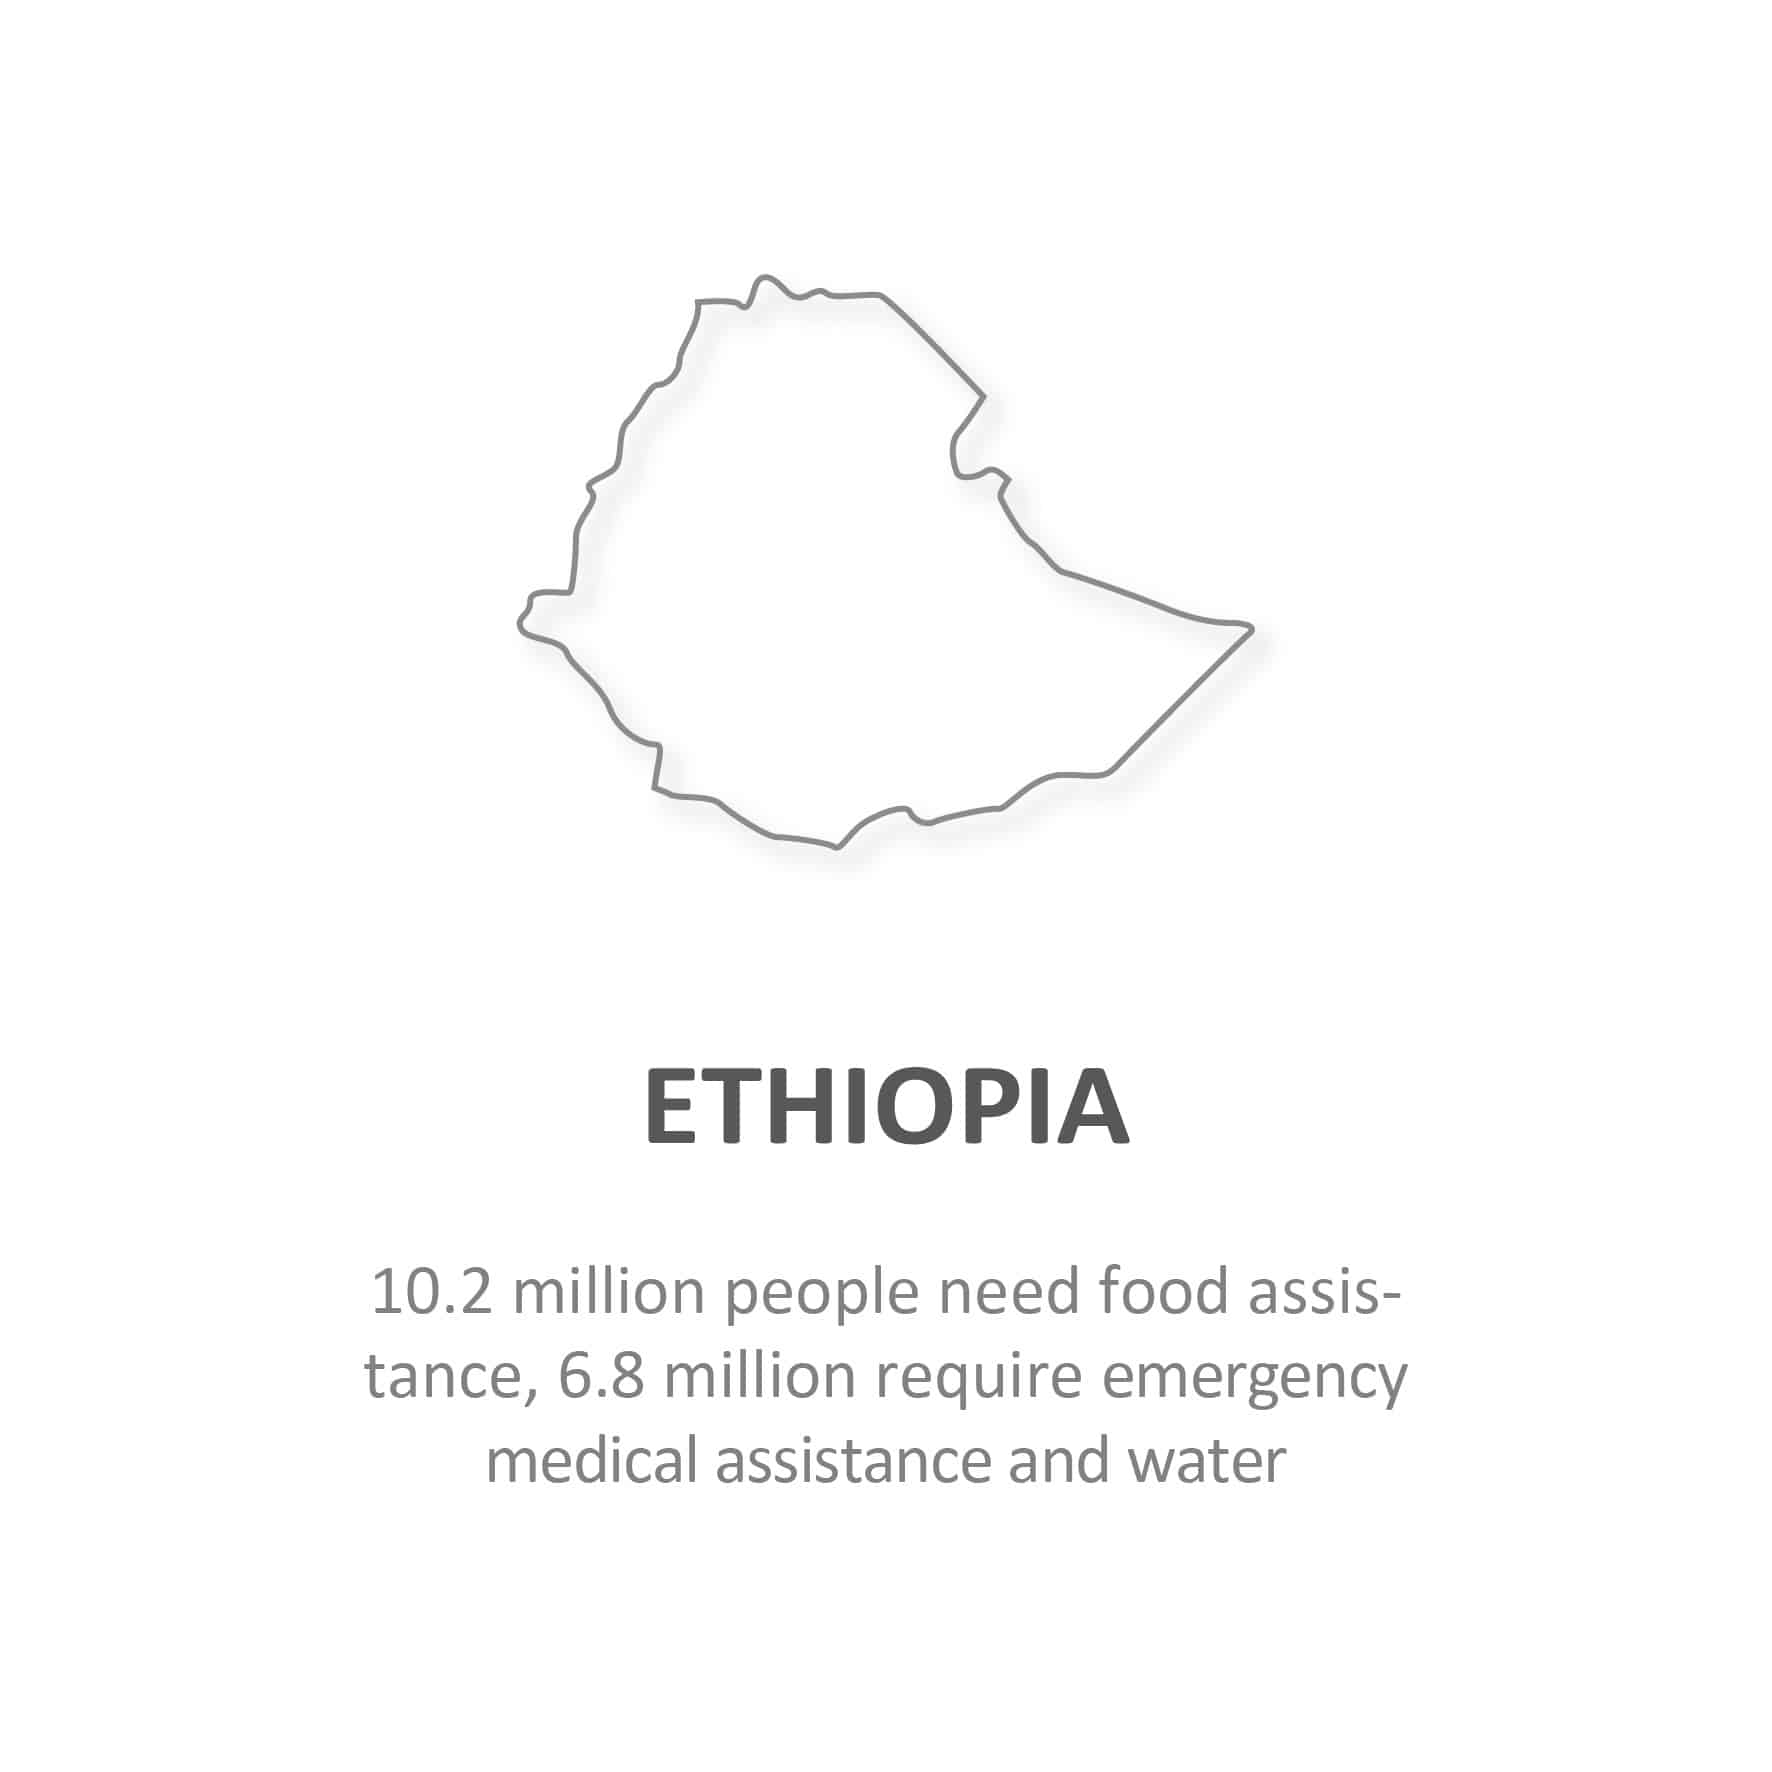 Statistics for Ethiopia